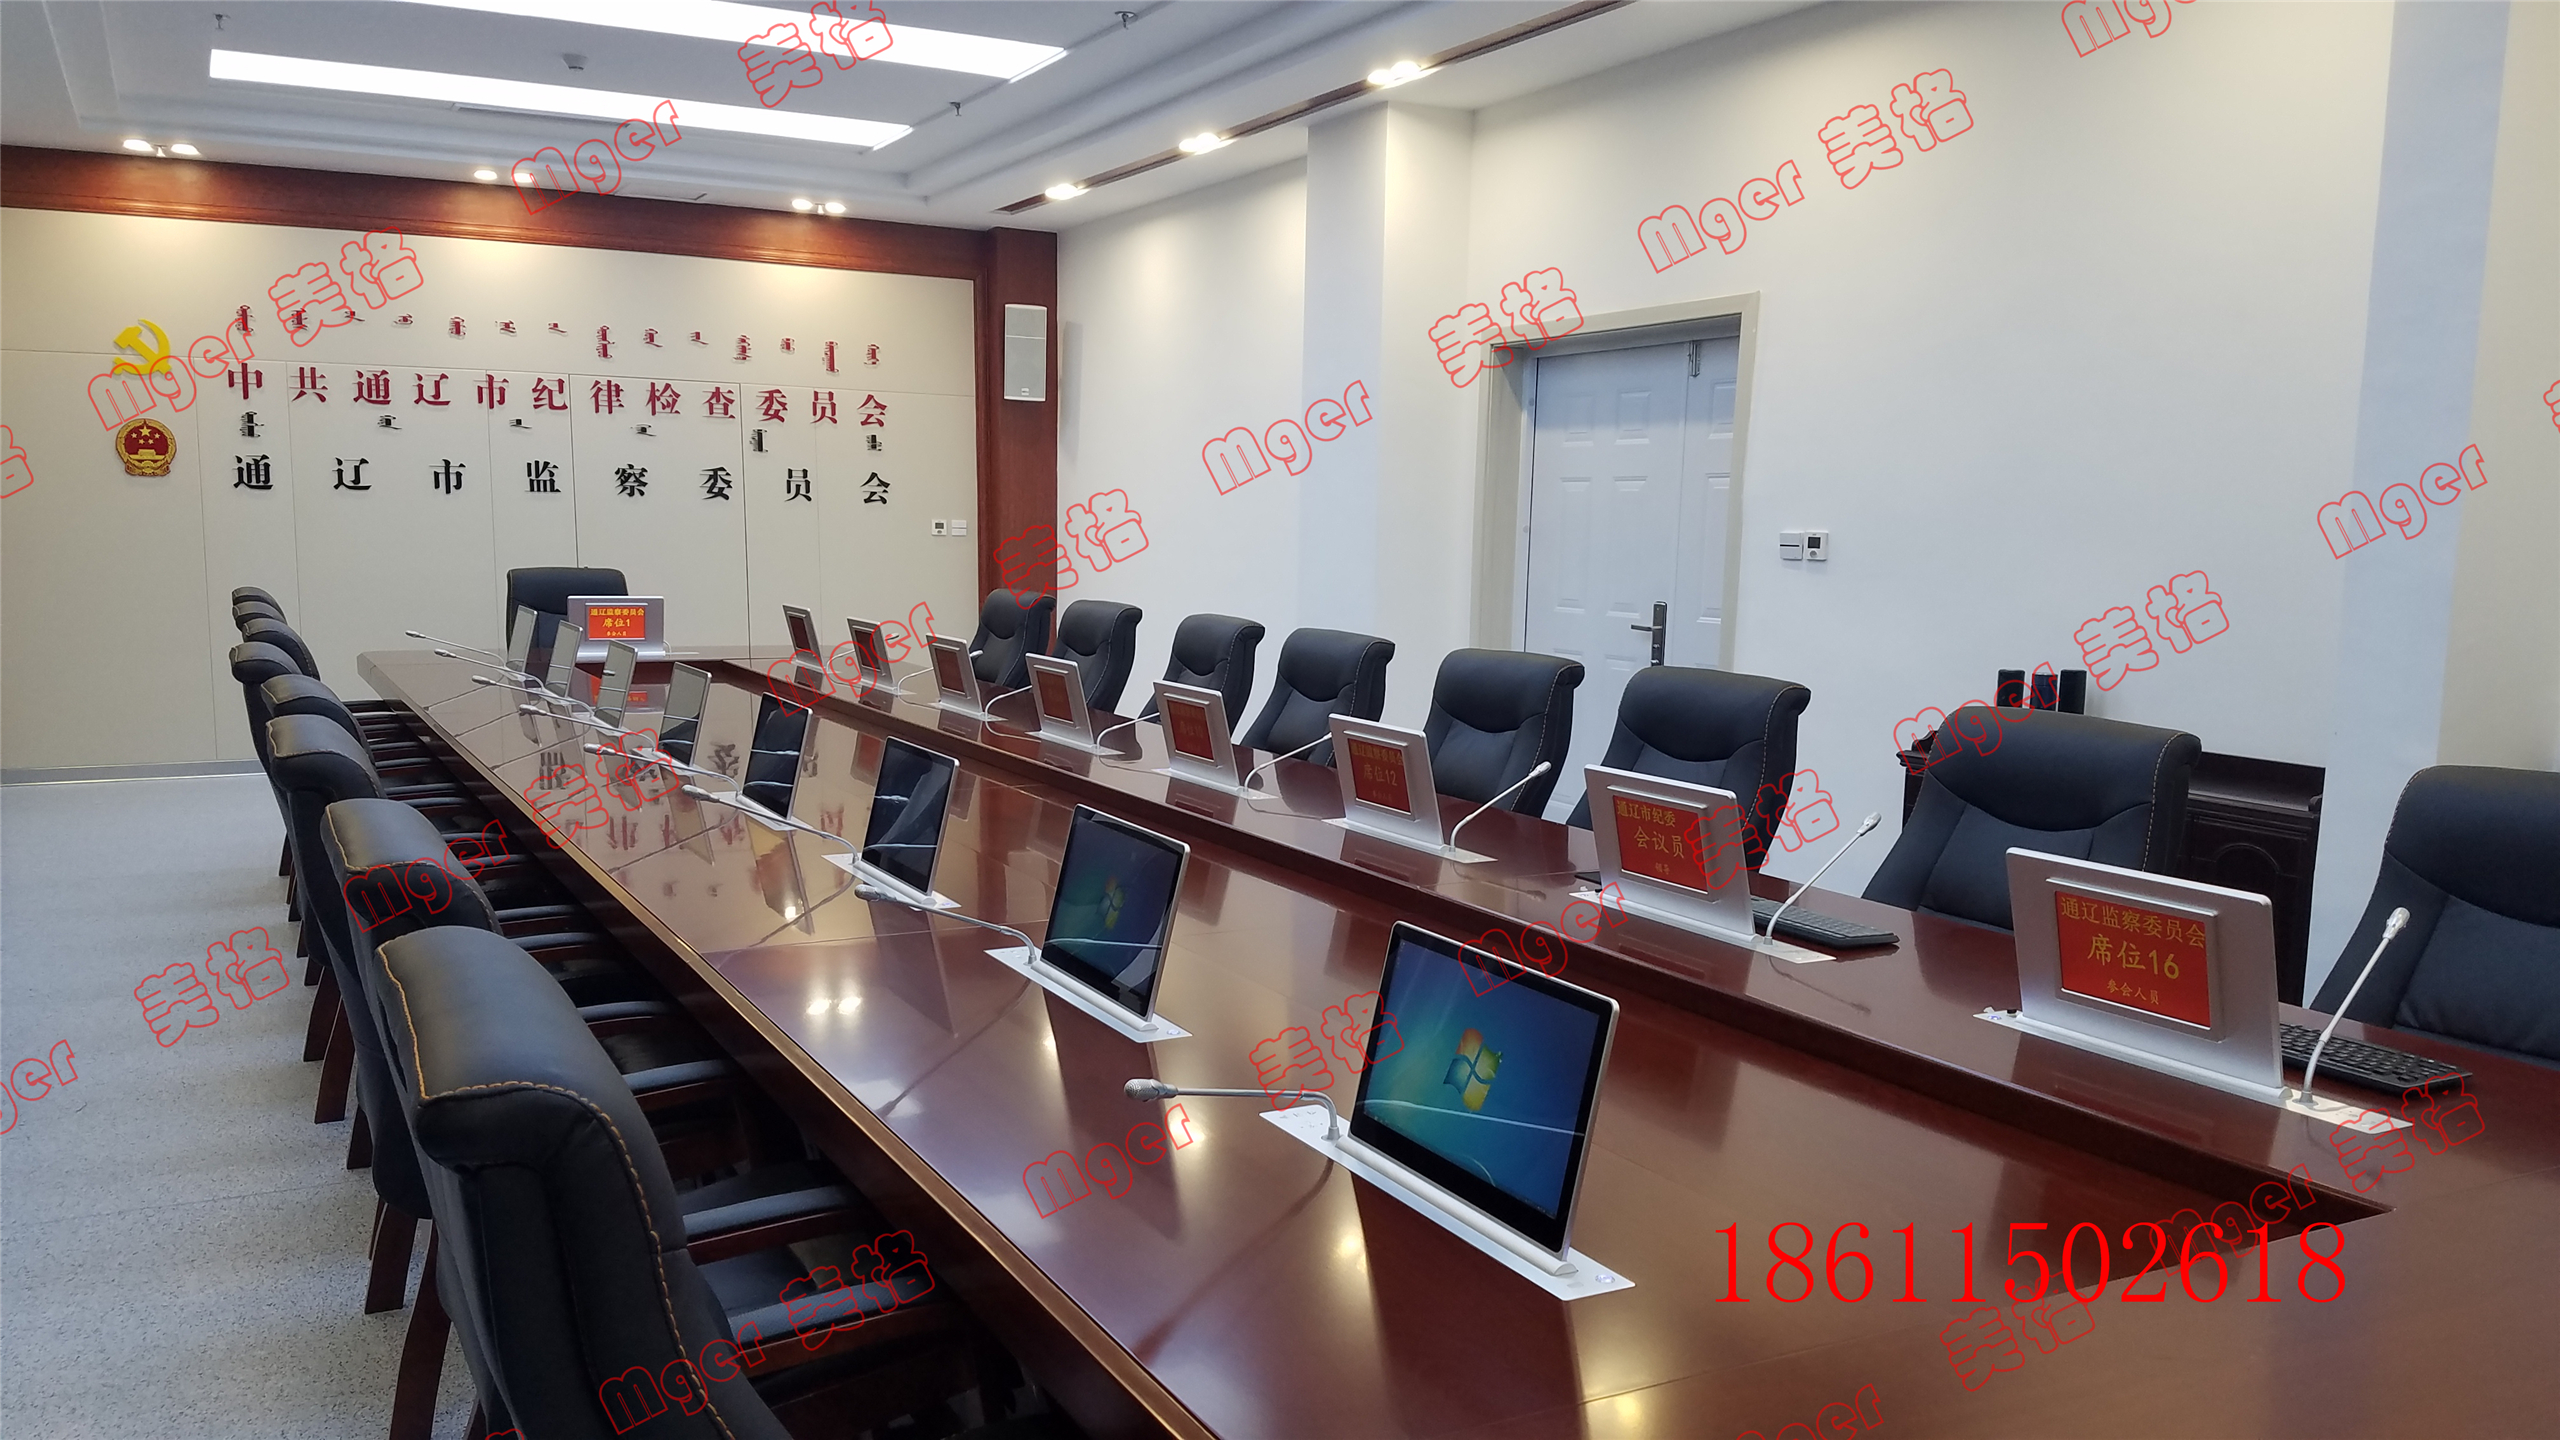 供应北京市美格牌Mger-H200会议桌超薄话筒升降器,超薄液晶一体机升降器图片